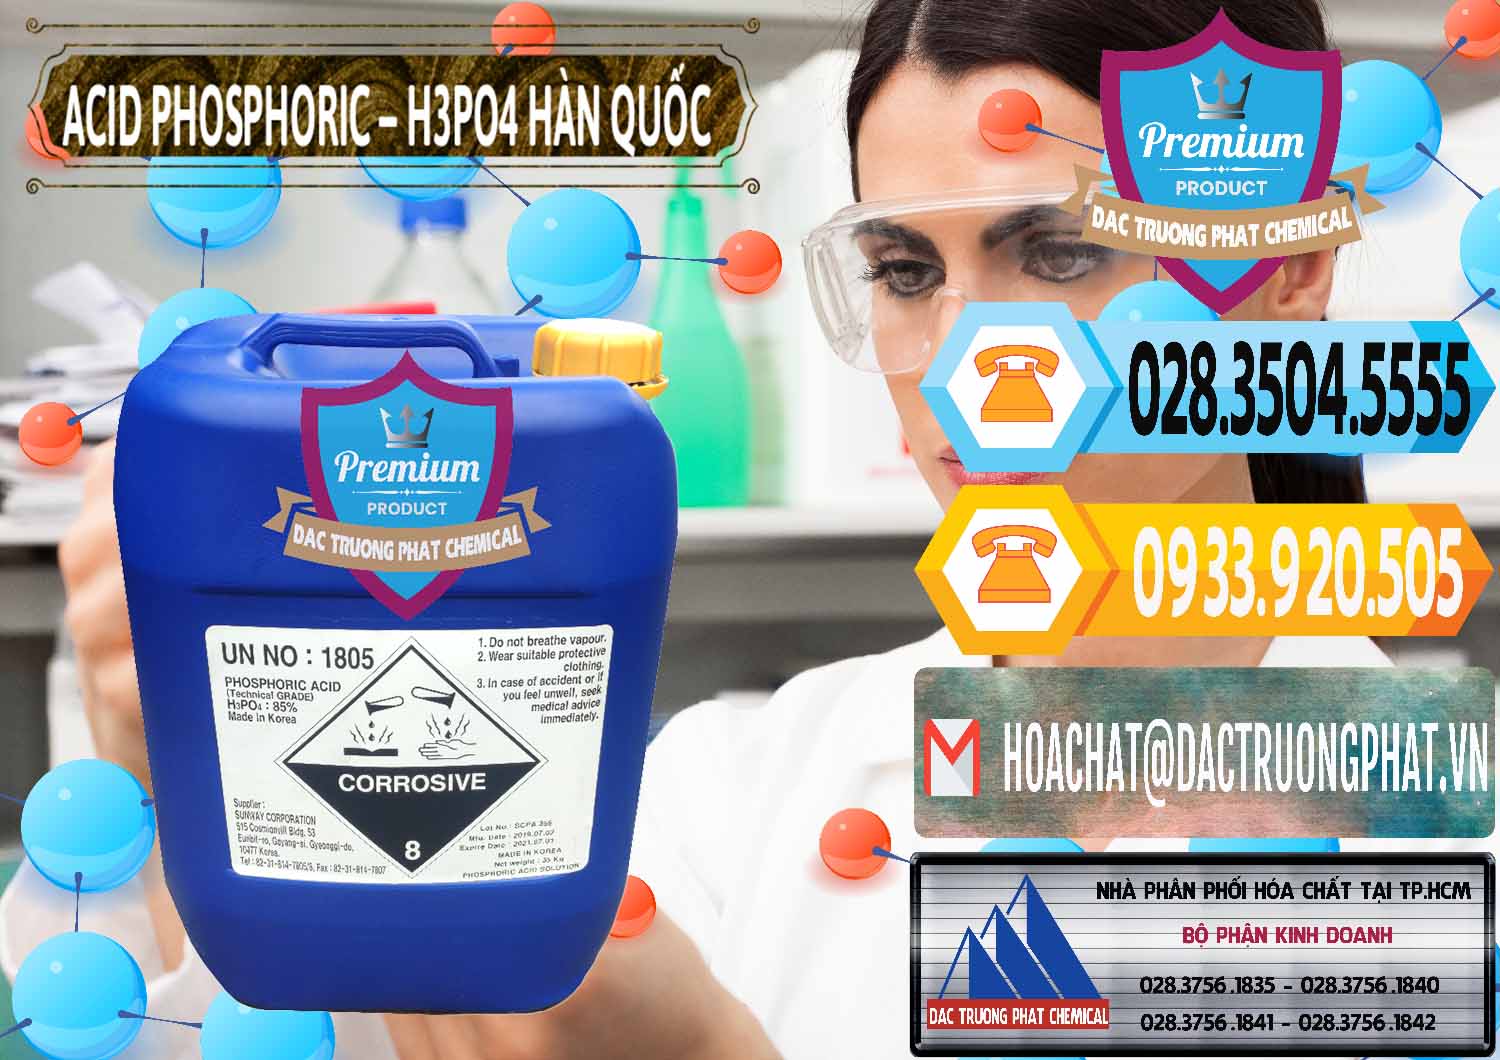 Công ty bán _ cung cấp Acid Phosphoric – H3PO4 85% Can Xanh Hàn Quốc Korea - 0016 - Đơn vị cung ứng và phân phối hóa chất tại TP.HCM - hoachattayrua.net